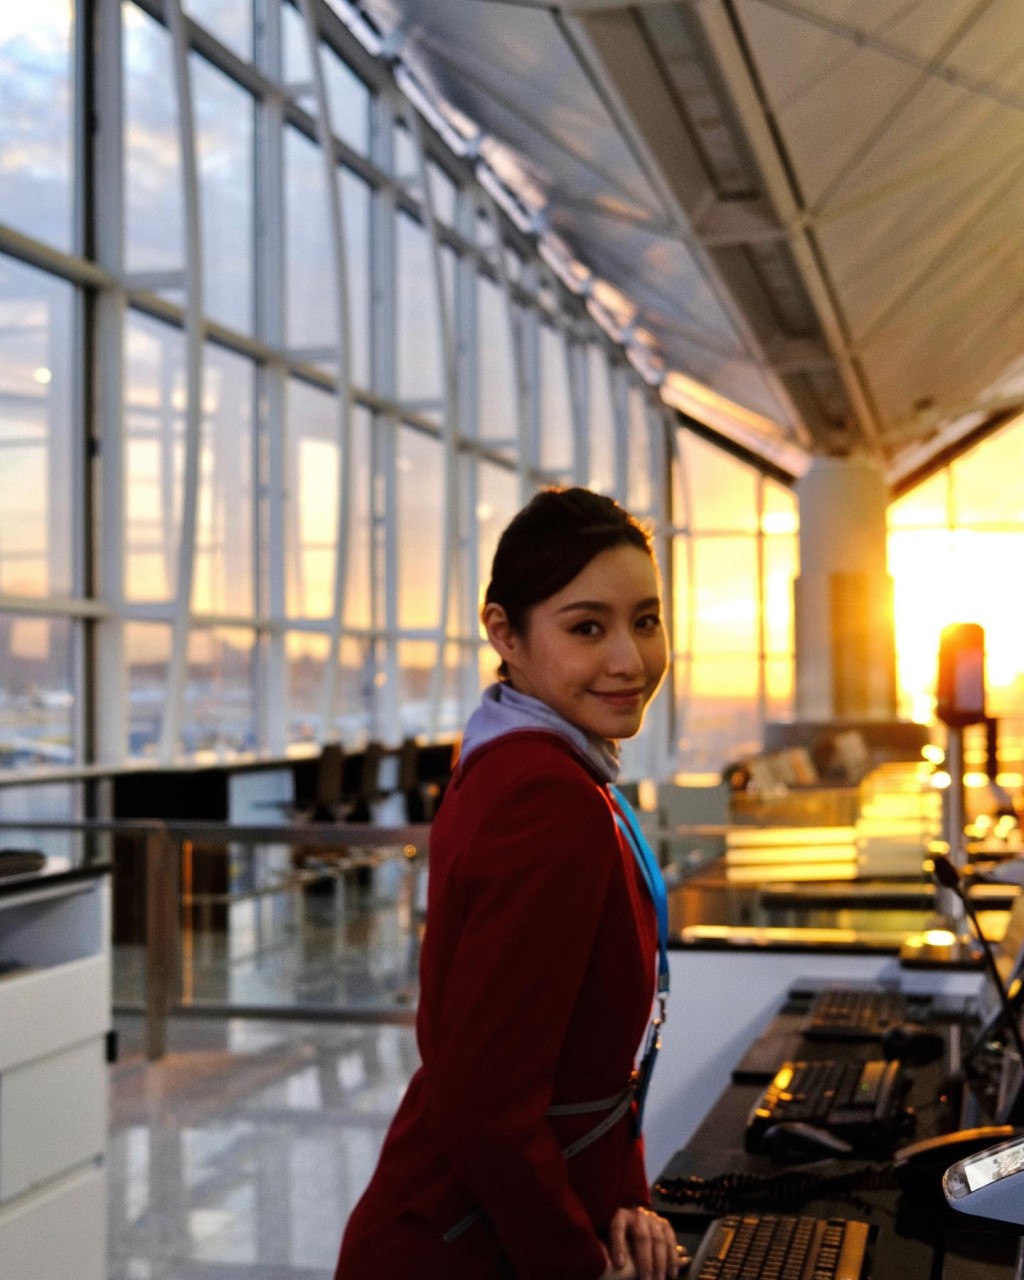 雖然蘇可欣在TVB發展看似有不少機會，但早前她透露未考慮續約，有意重返航空業。